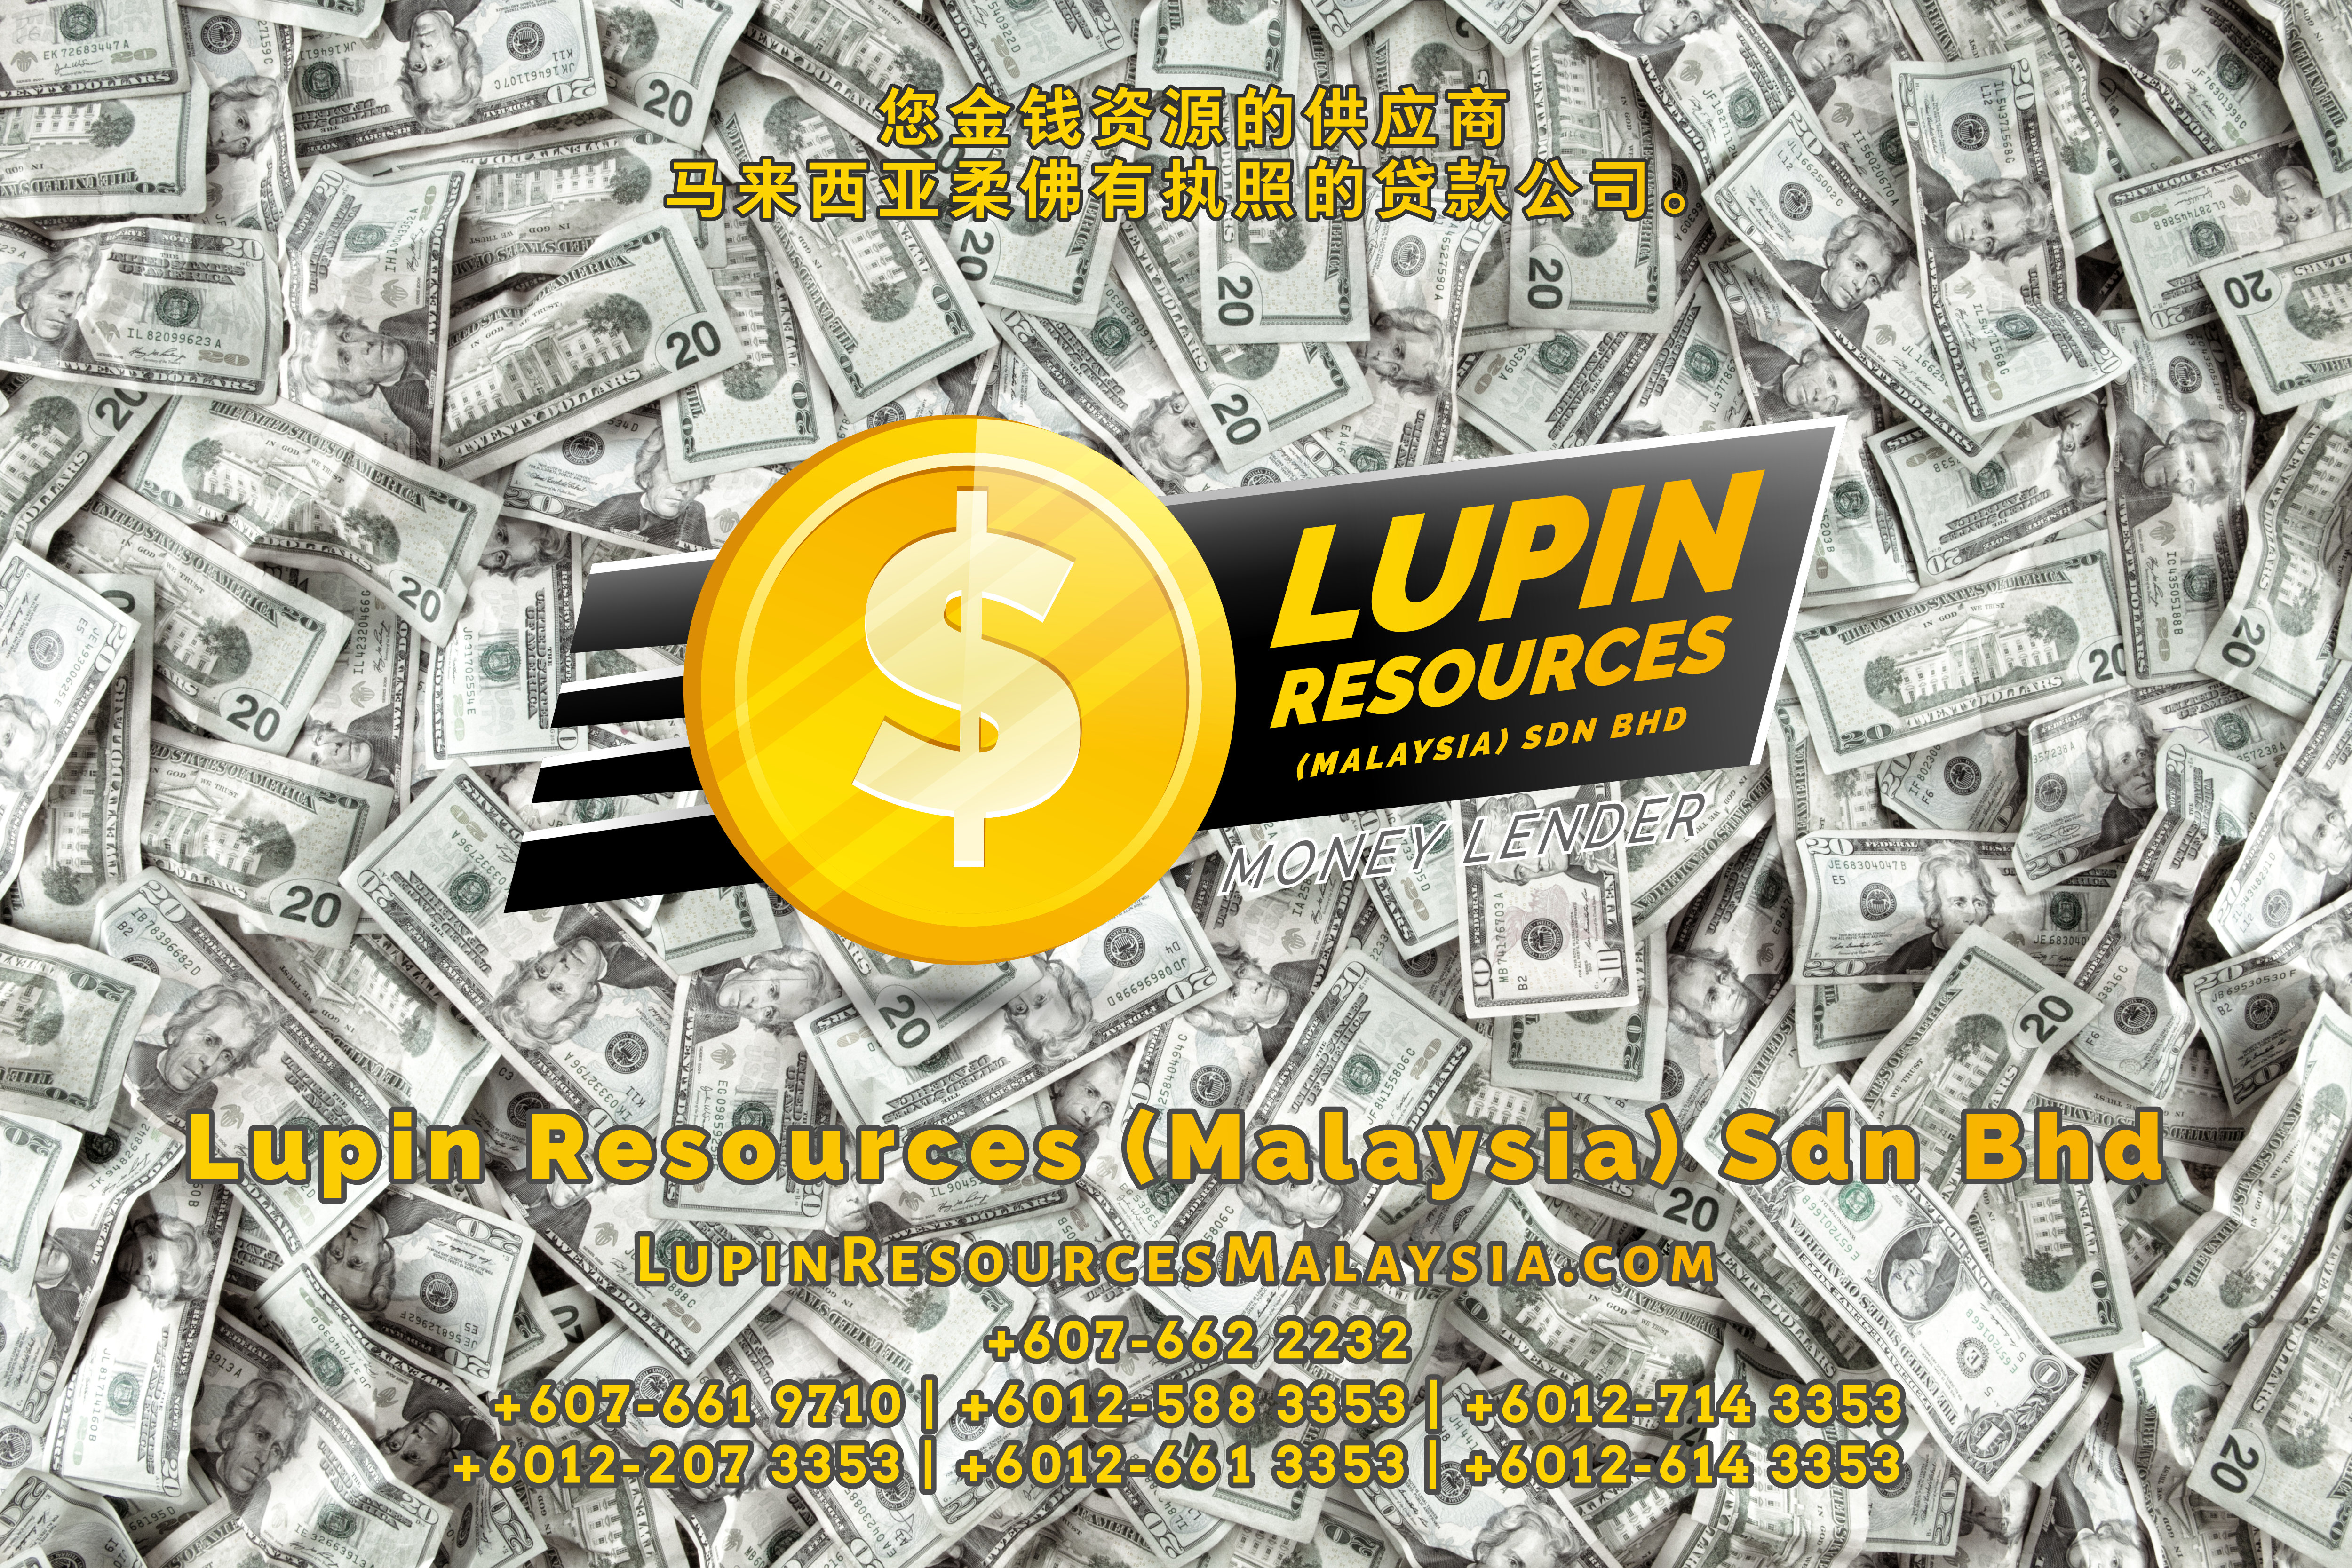 柔佛有执照的贷款公司 Lupin Resources Malaysia SDN BHD 您金钱资源的供应商 古来 柔佛 马来西亚 个人贷款 商业贷款 低利息抵押代款 经济 A01-35